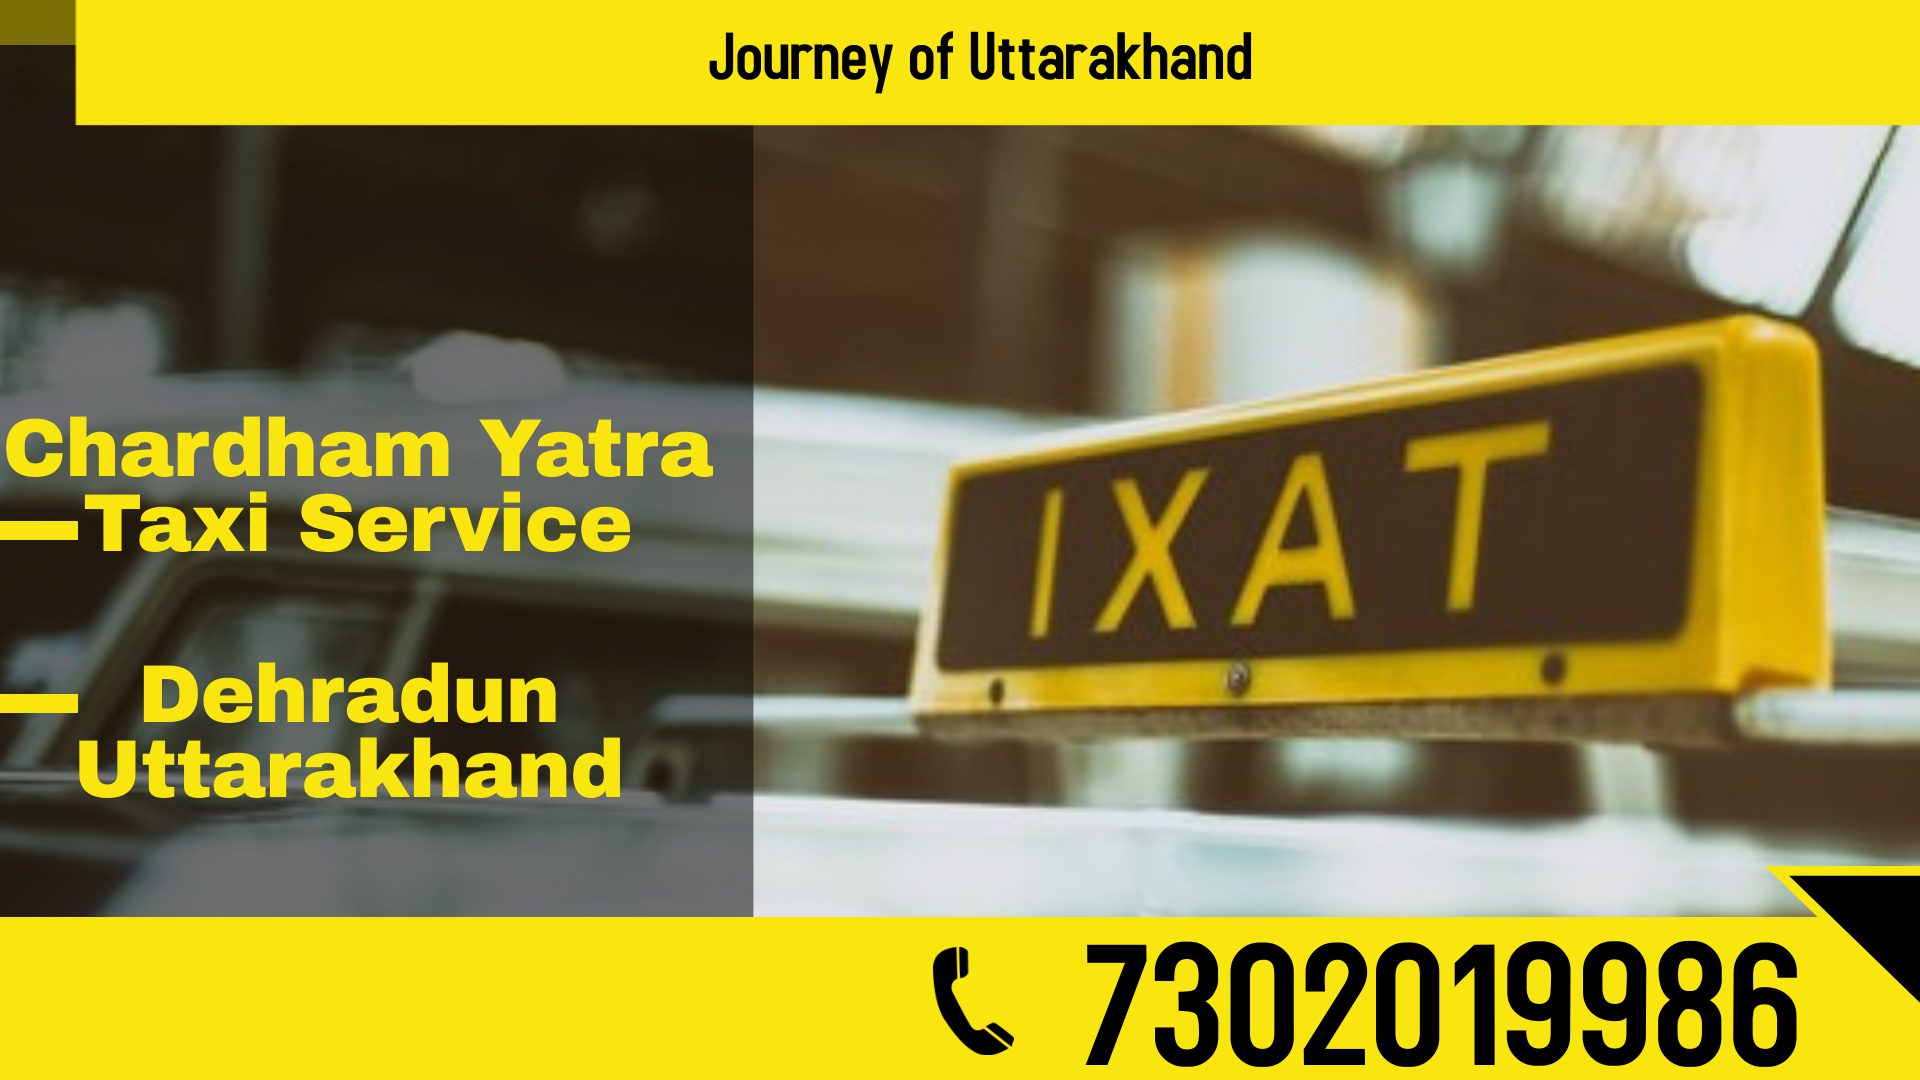 Chardham yatra taxi service dehradun